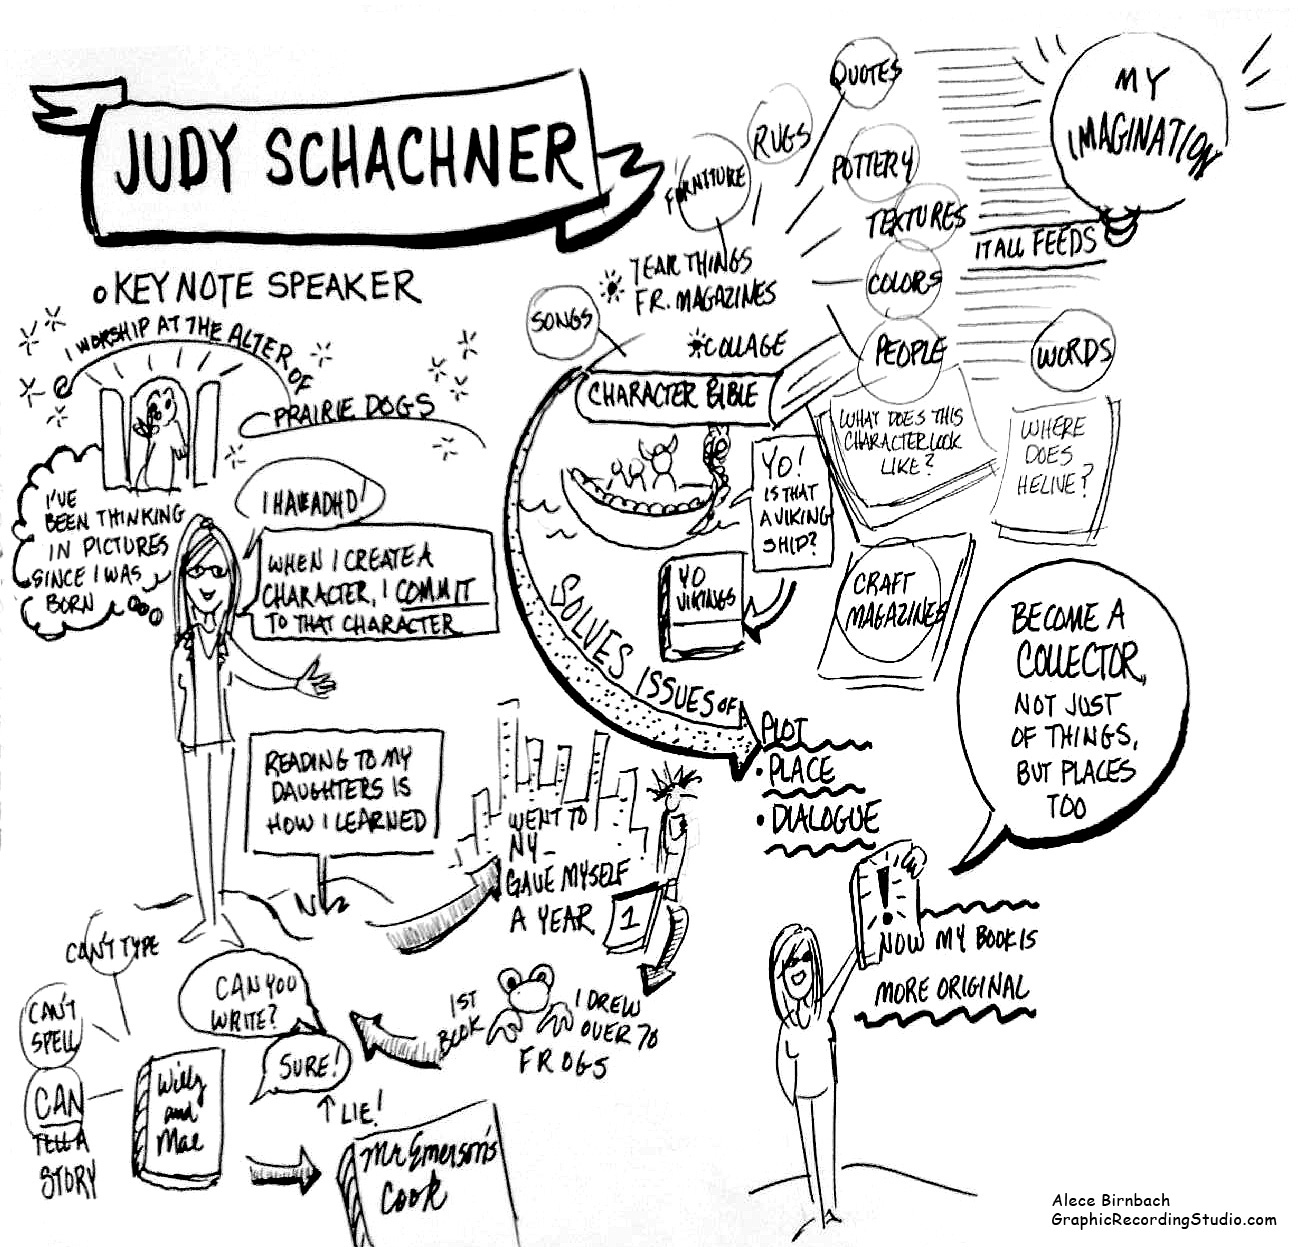 Judy-Schachner.jpg